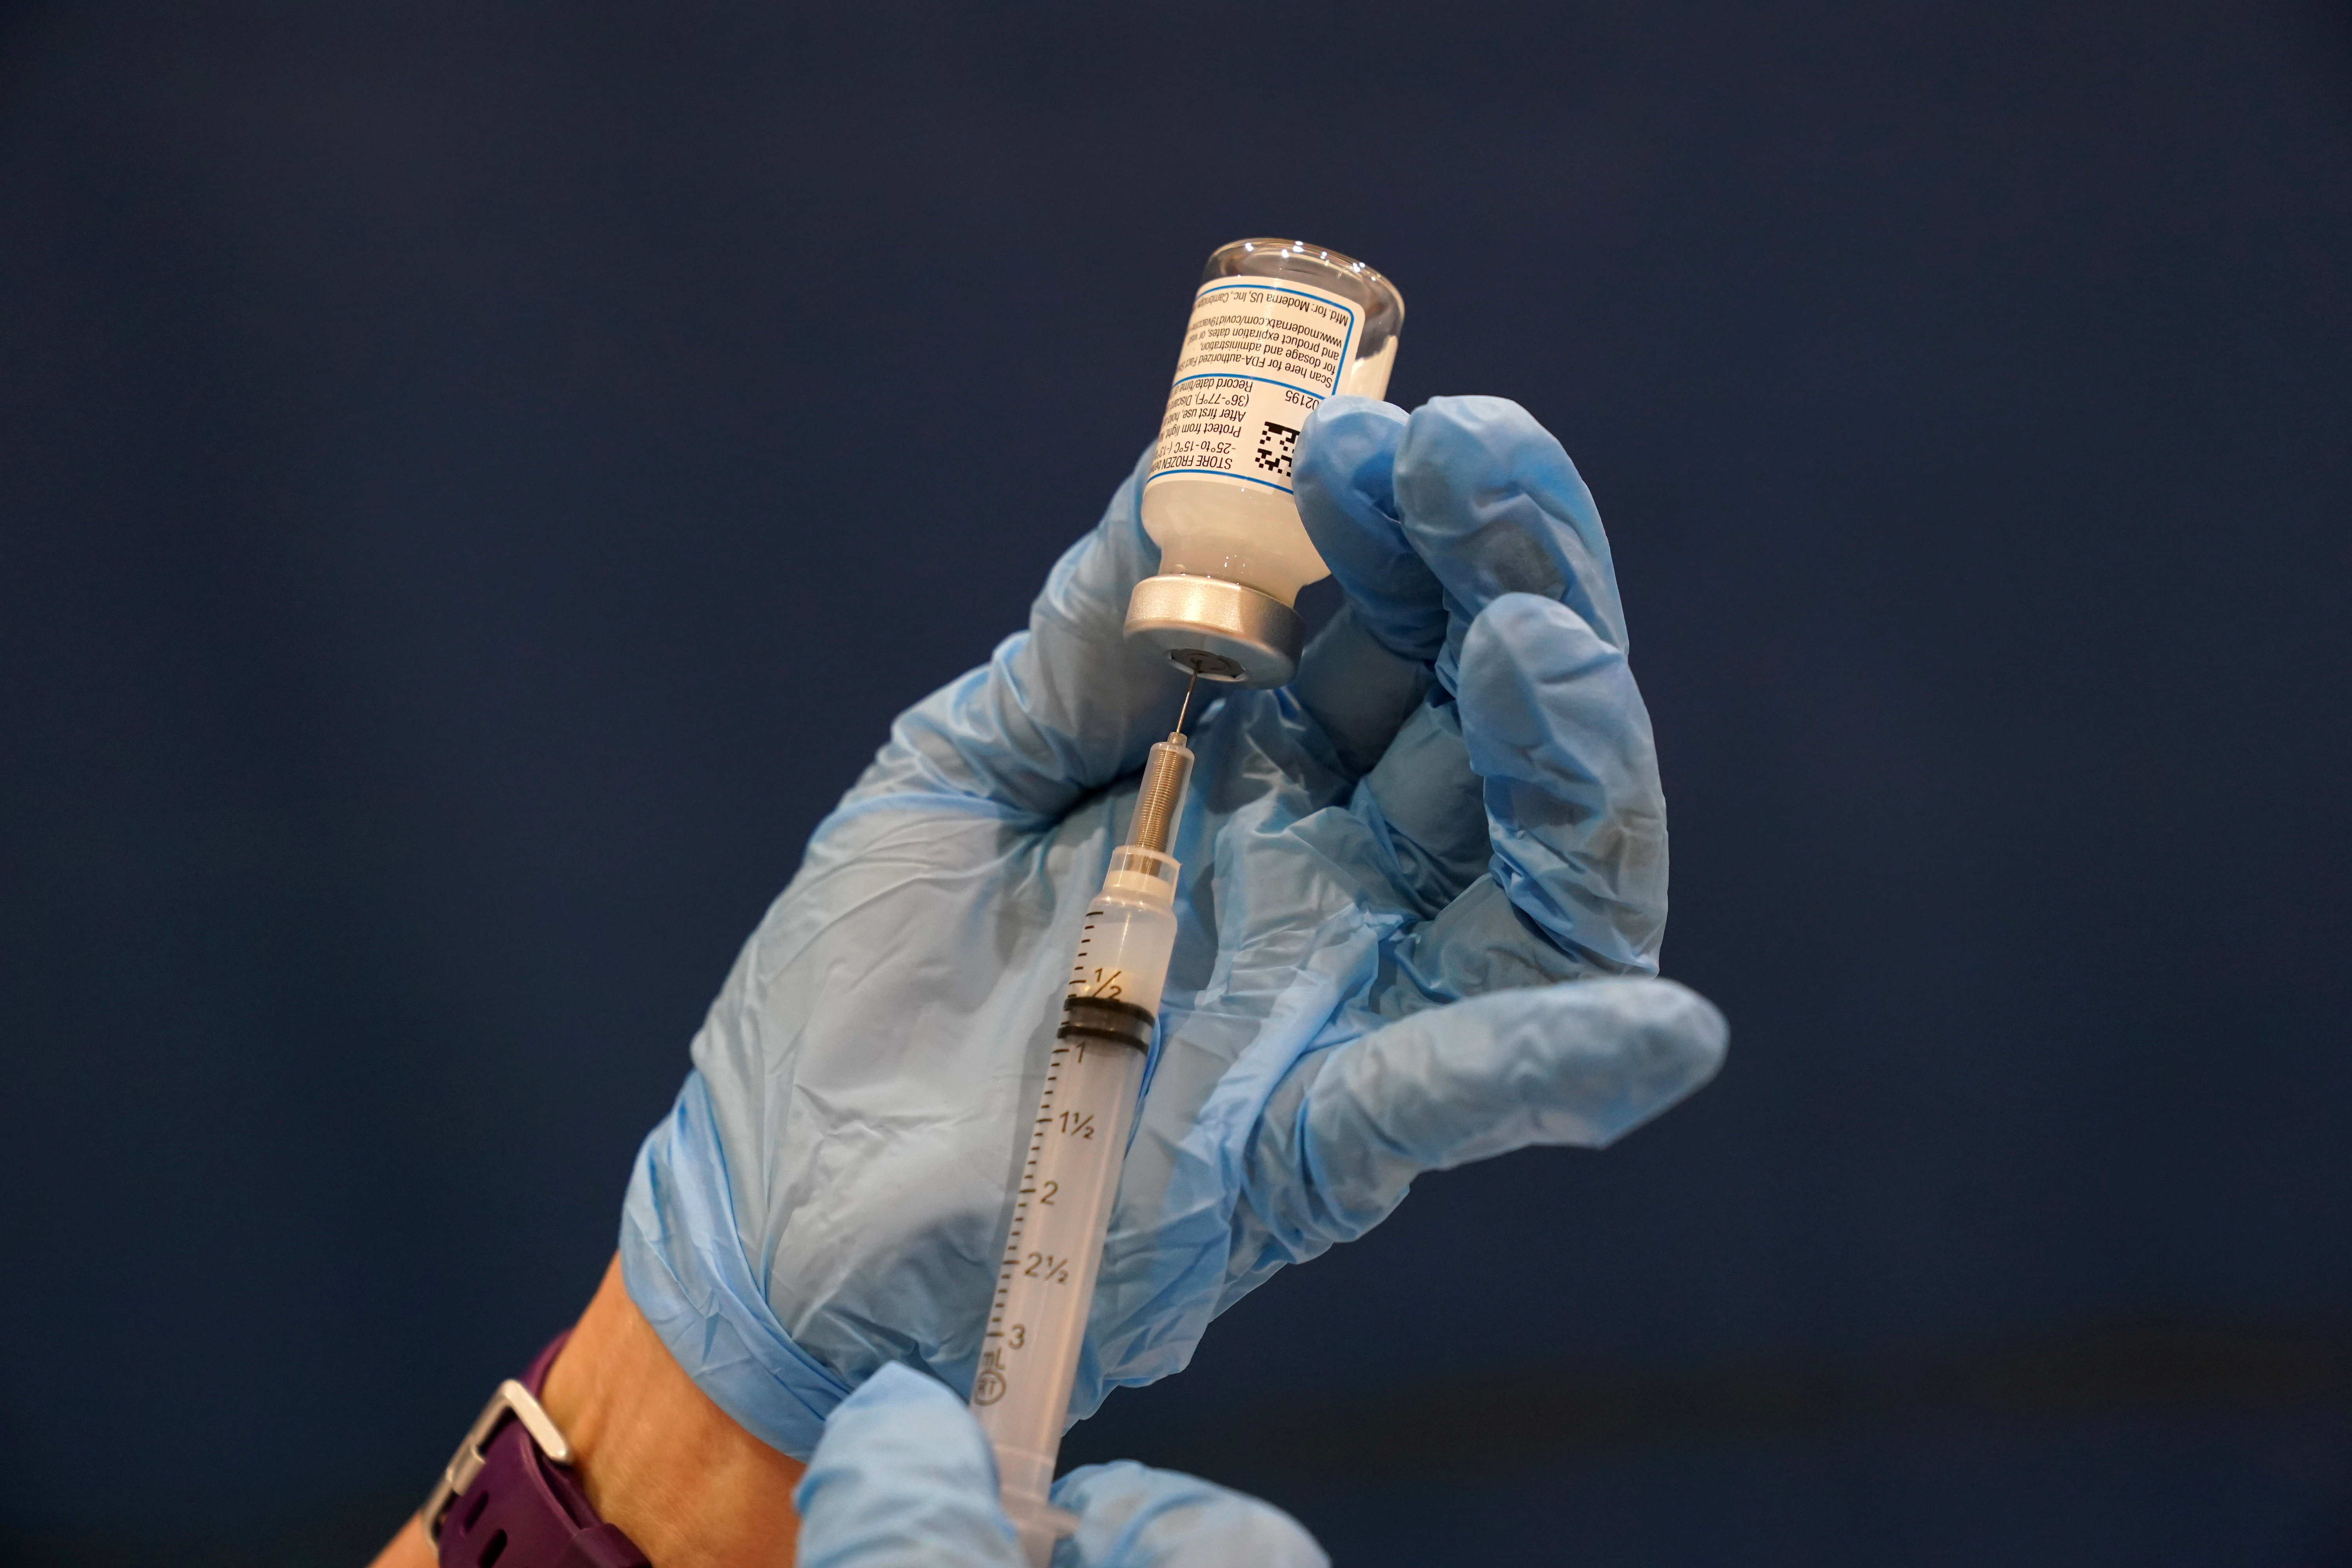 Hasta el 17 de marzo, se han aplicado casi 400 millones de vacunas contra el covid-19 alrededor del mundo (REUTERS/Yara Nardi)